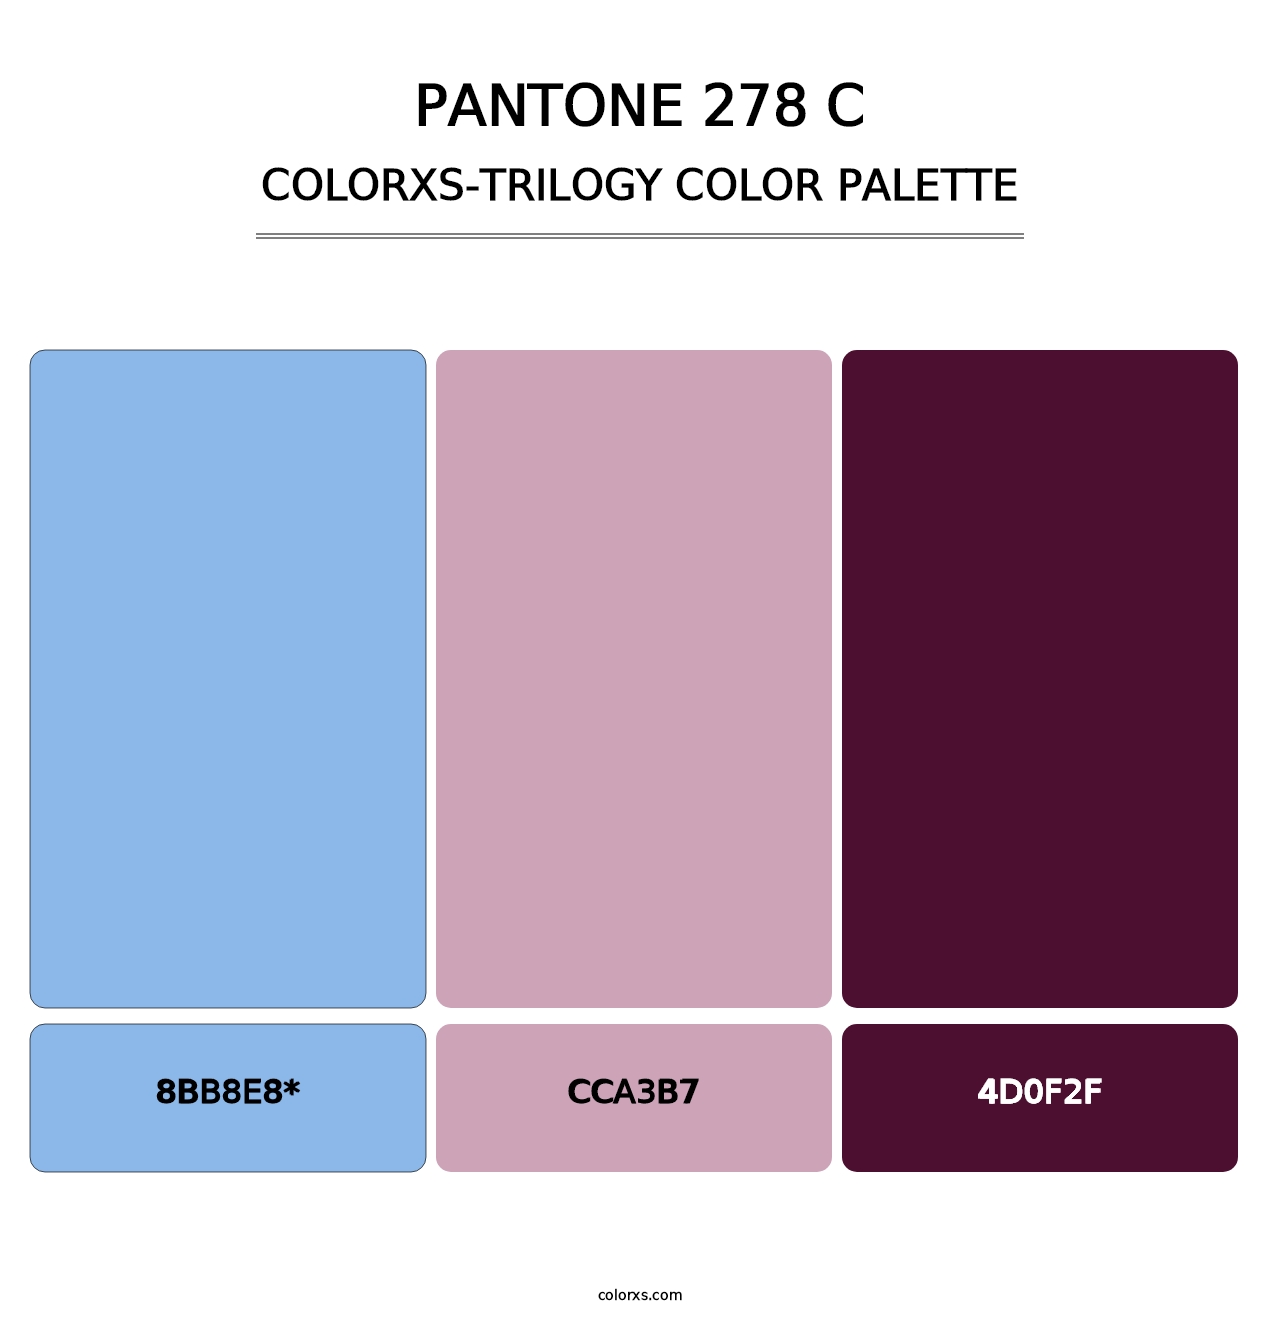 PANTONE 278 C - Colorxs Trilogy Palette